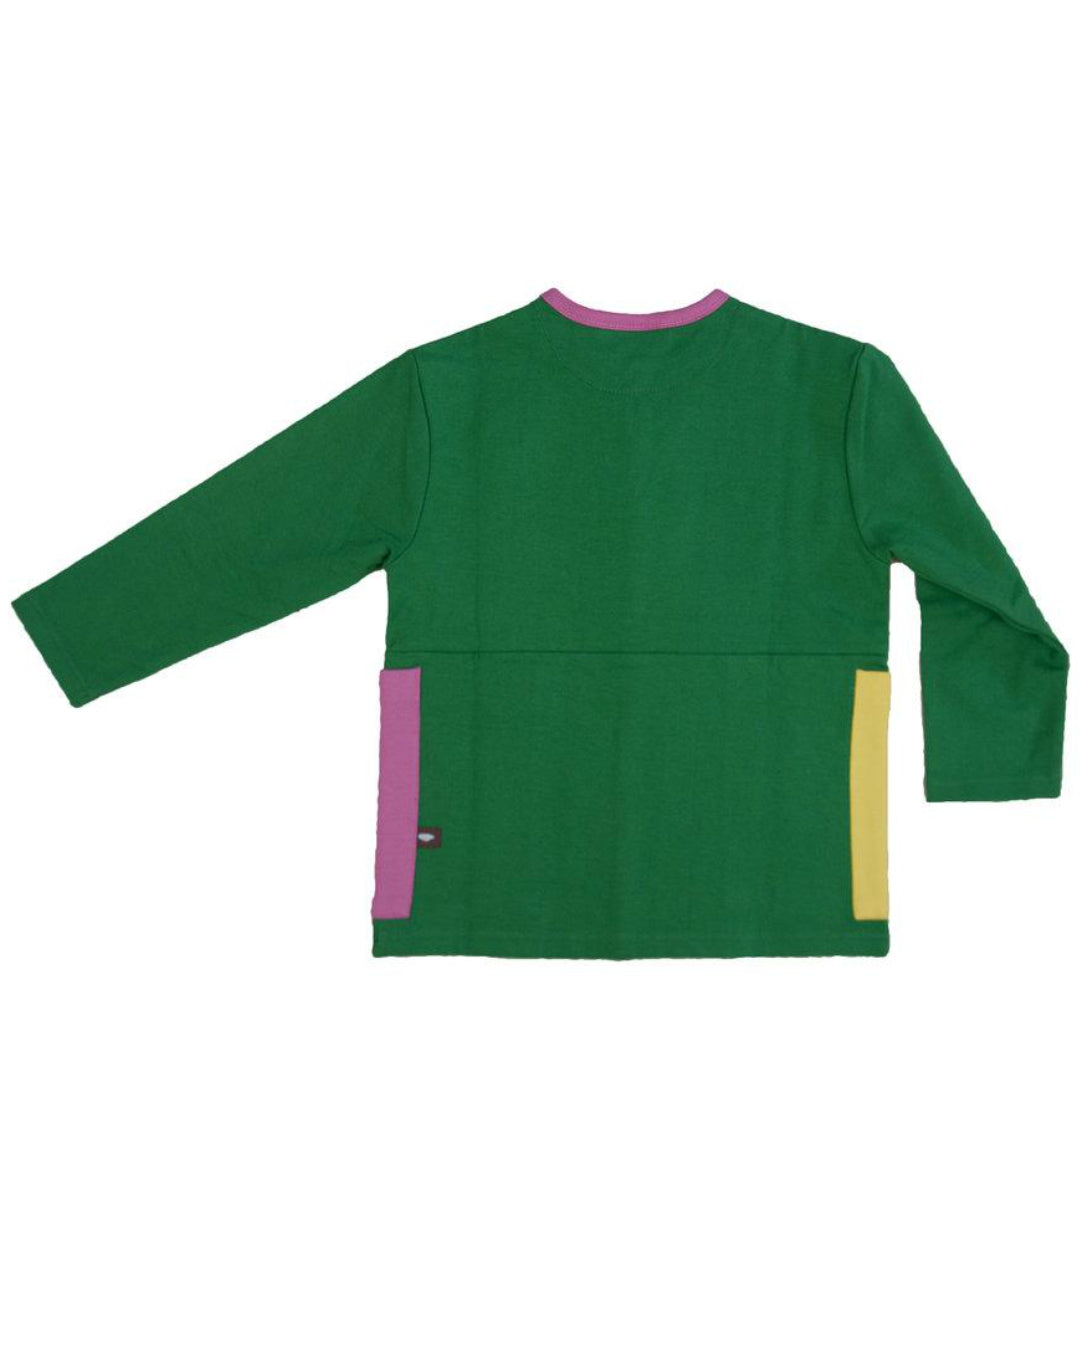 grüne Jacke Rückansicht von moromini für Kinder